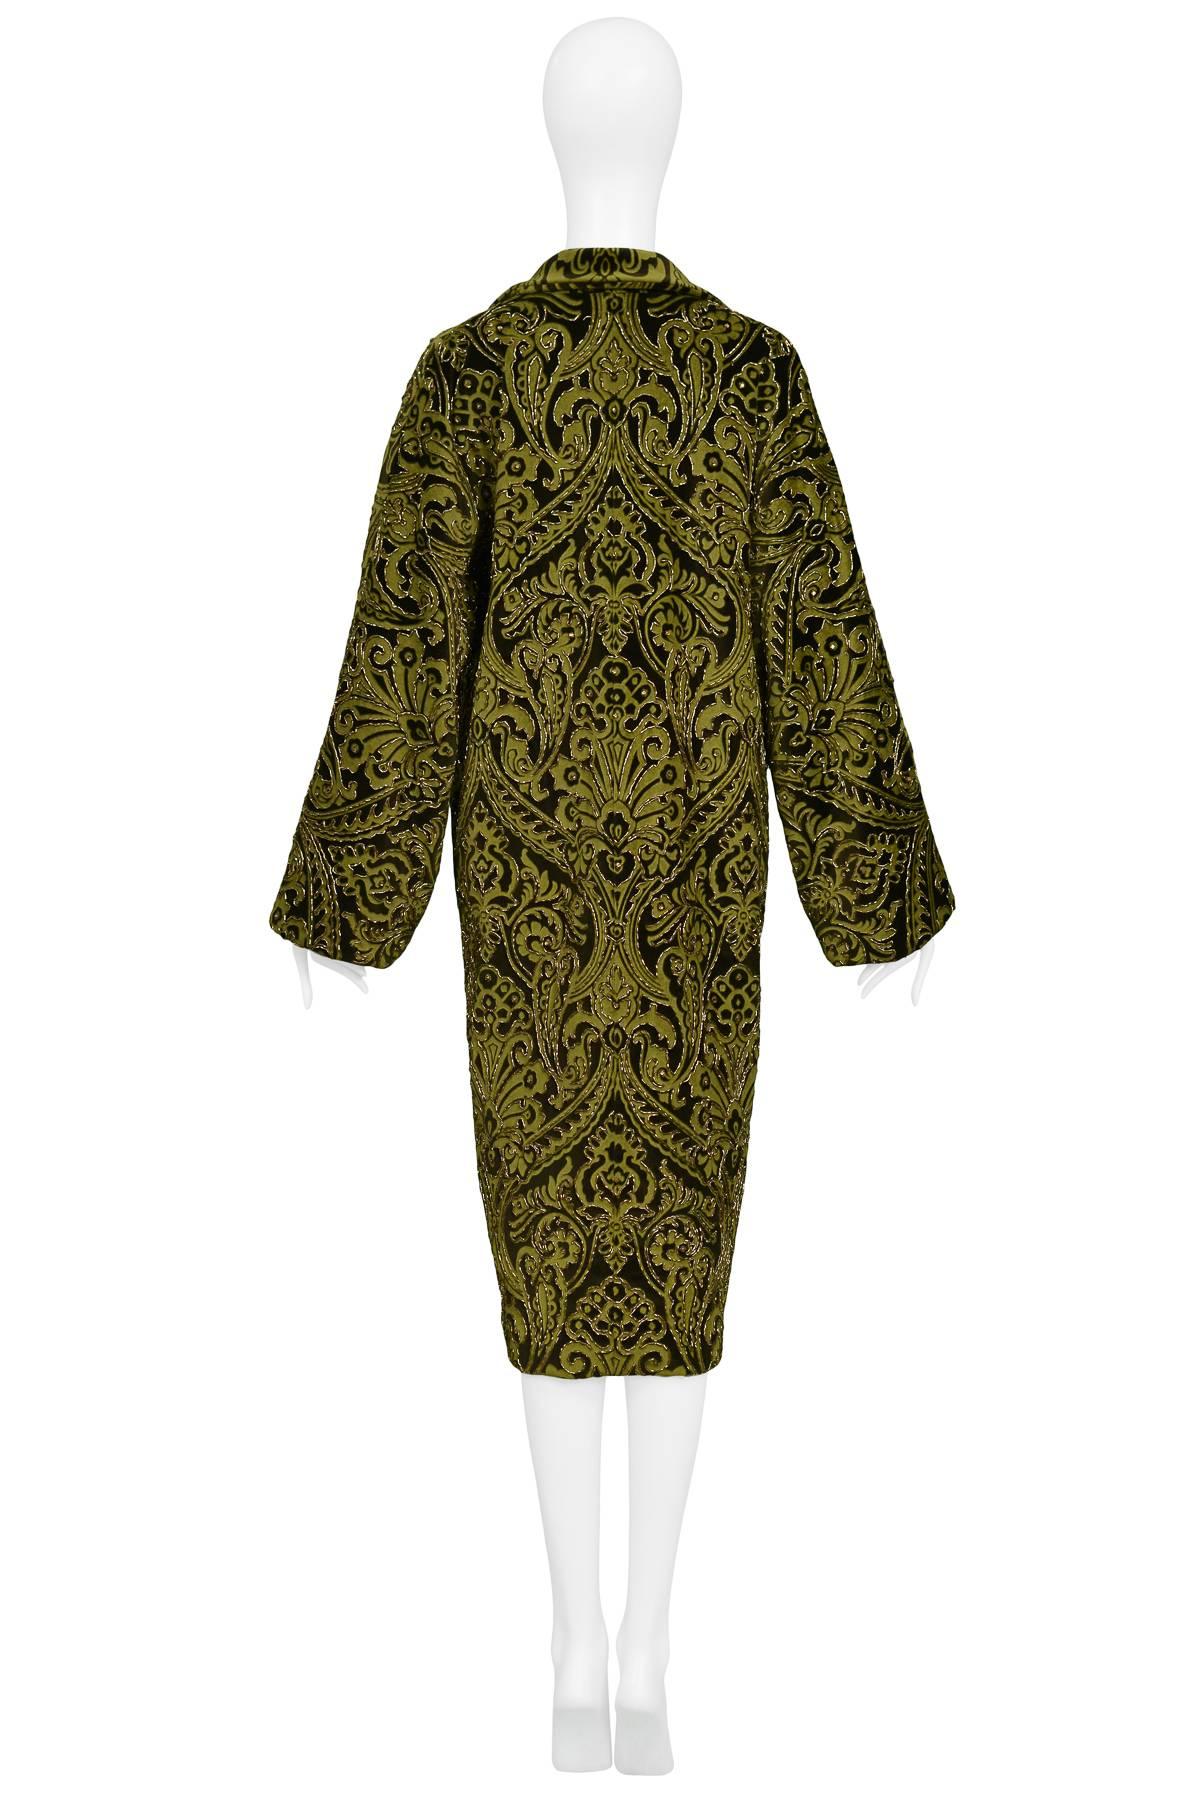 Dolce & Gabbana Important Velvet Beaded Coat  2